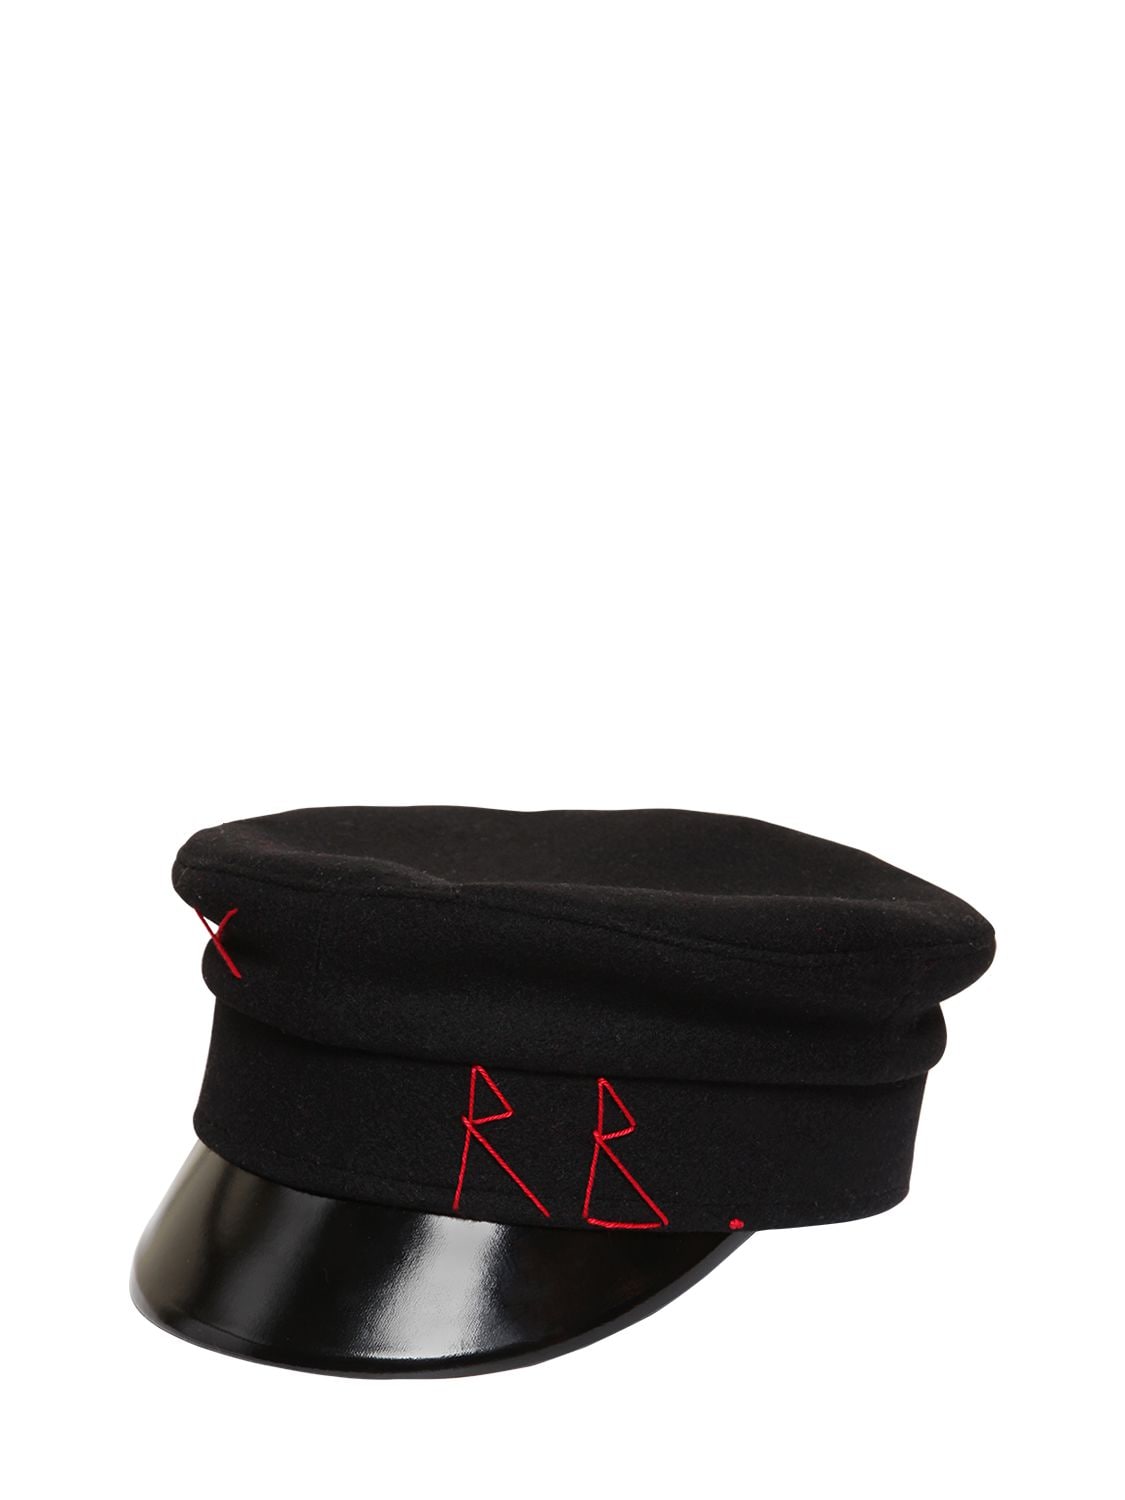 RUSLAN BAGINSKIY "BAKER BOY"羊毛帽子,69I99I003-QKXBQ0S1